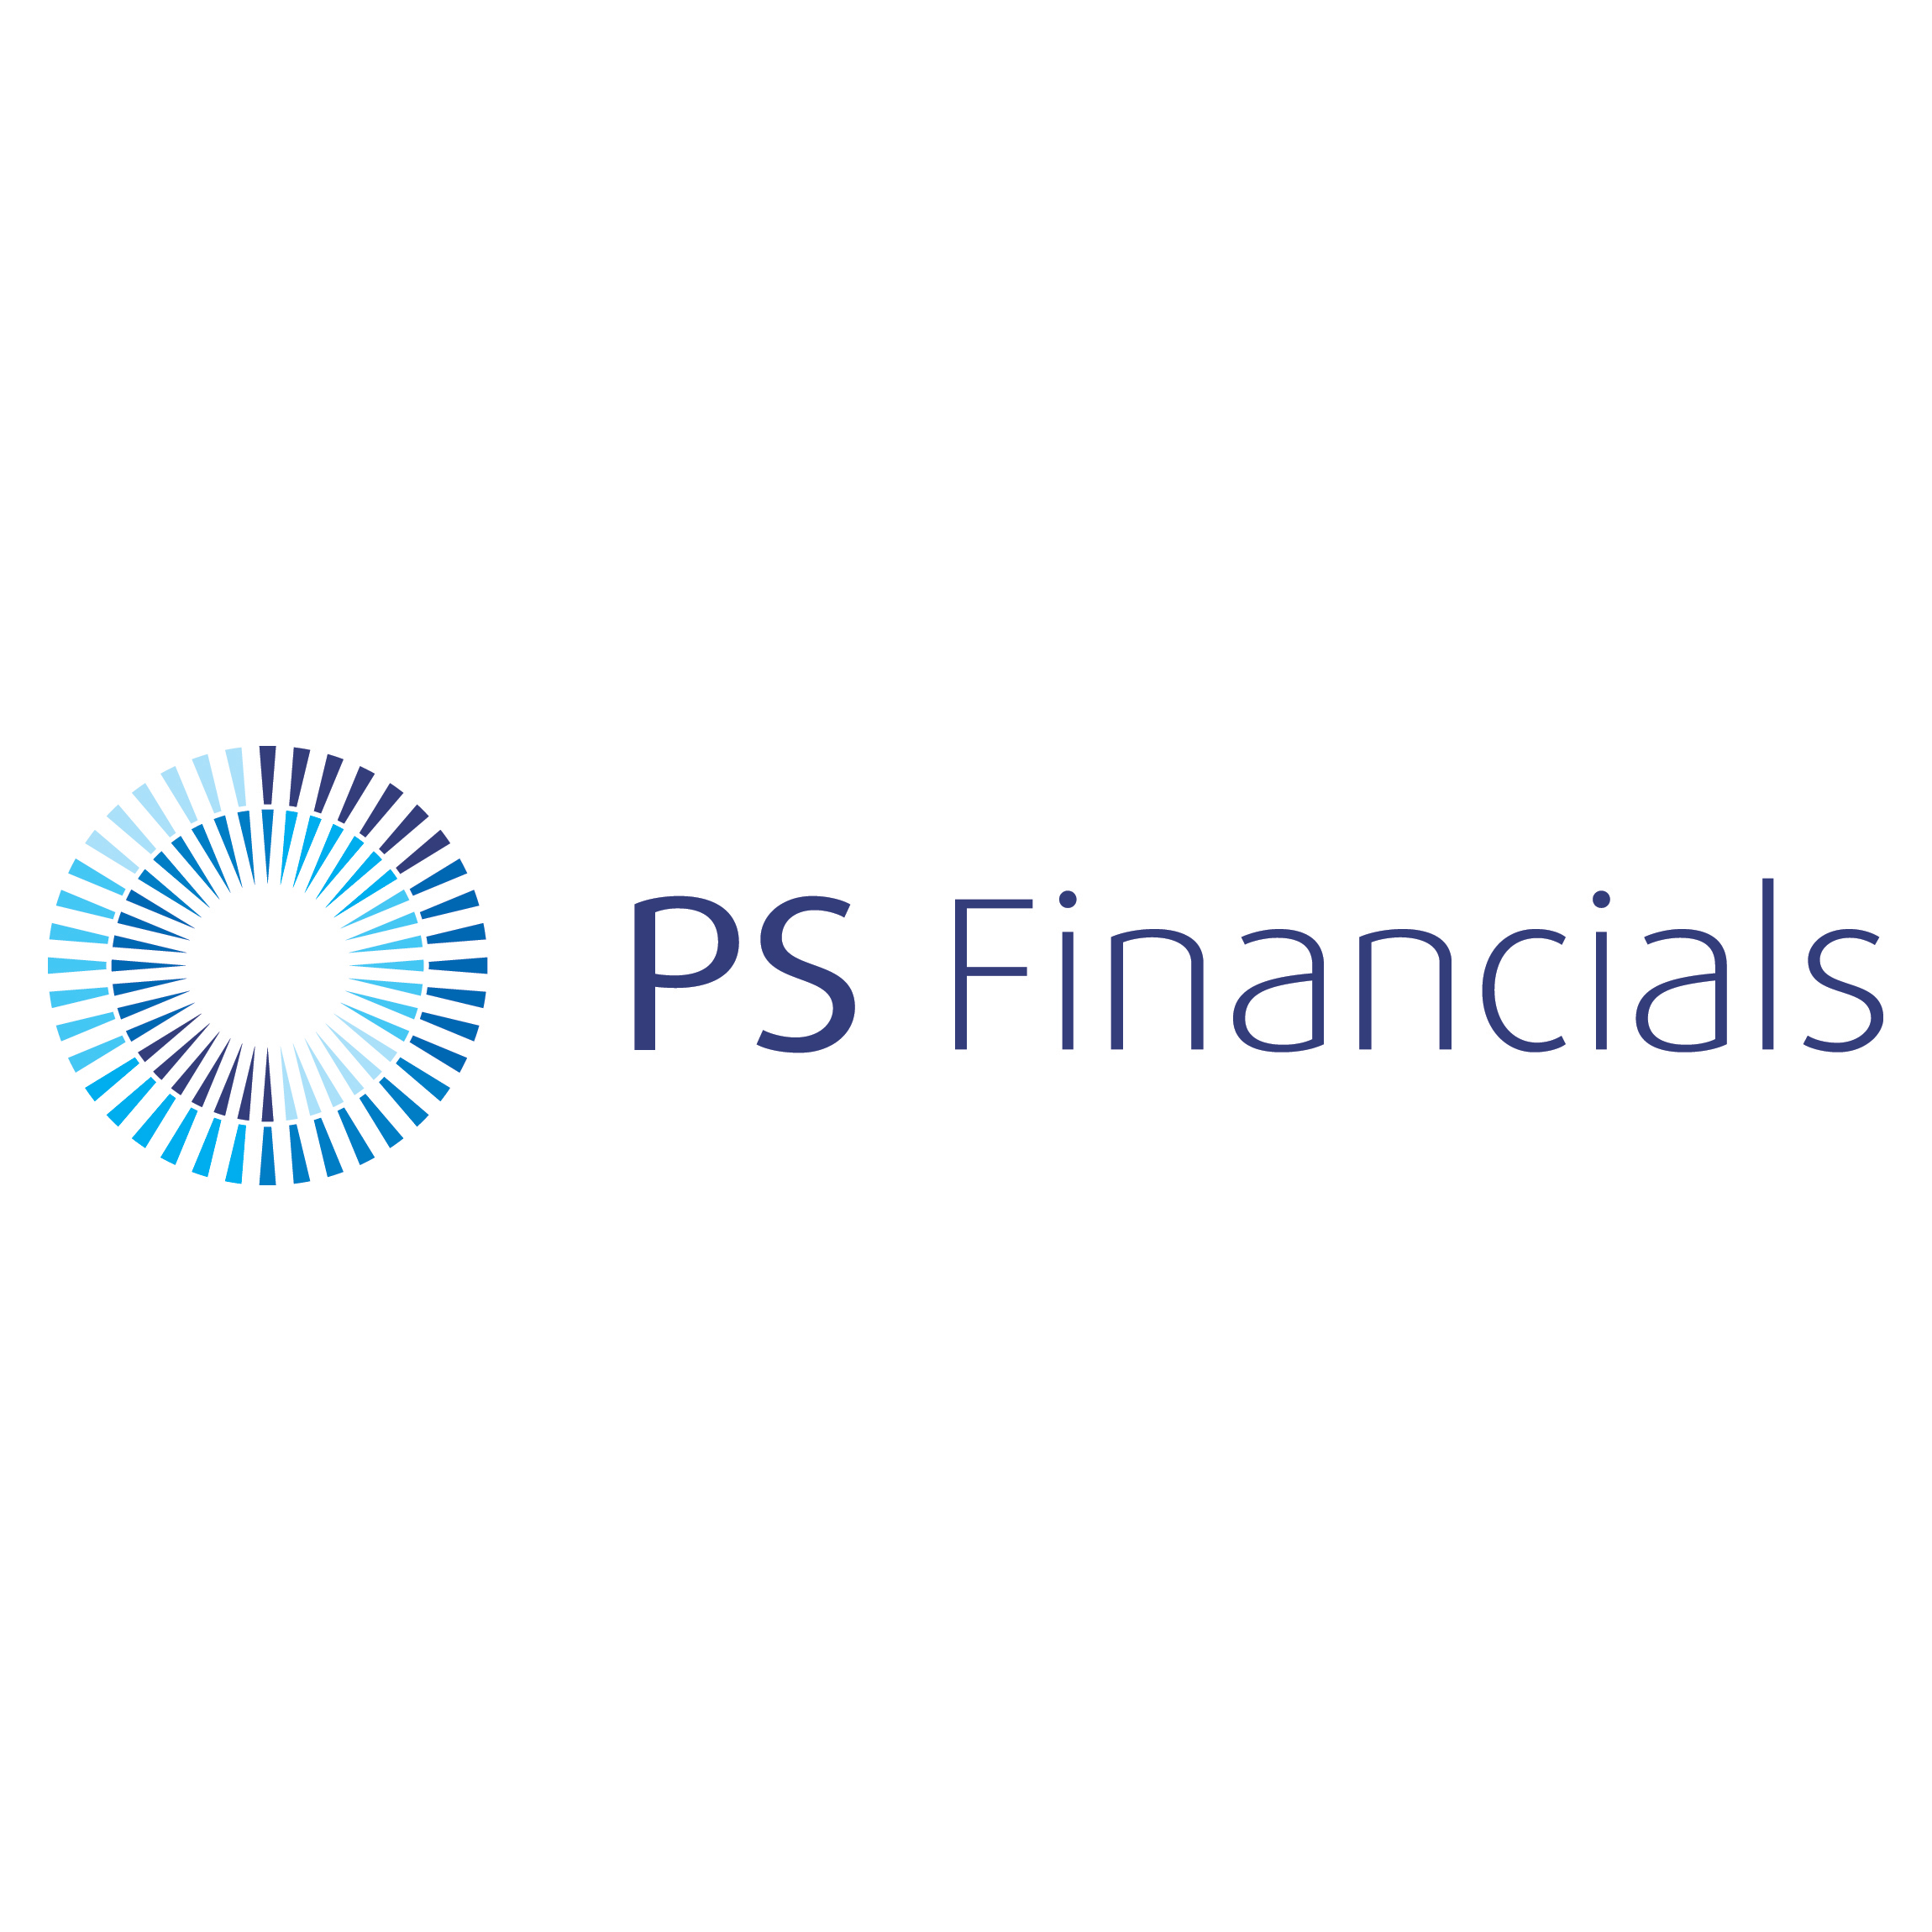 PS Financials